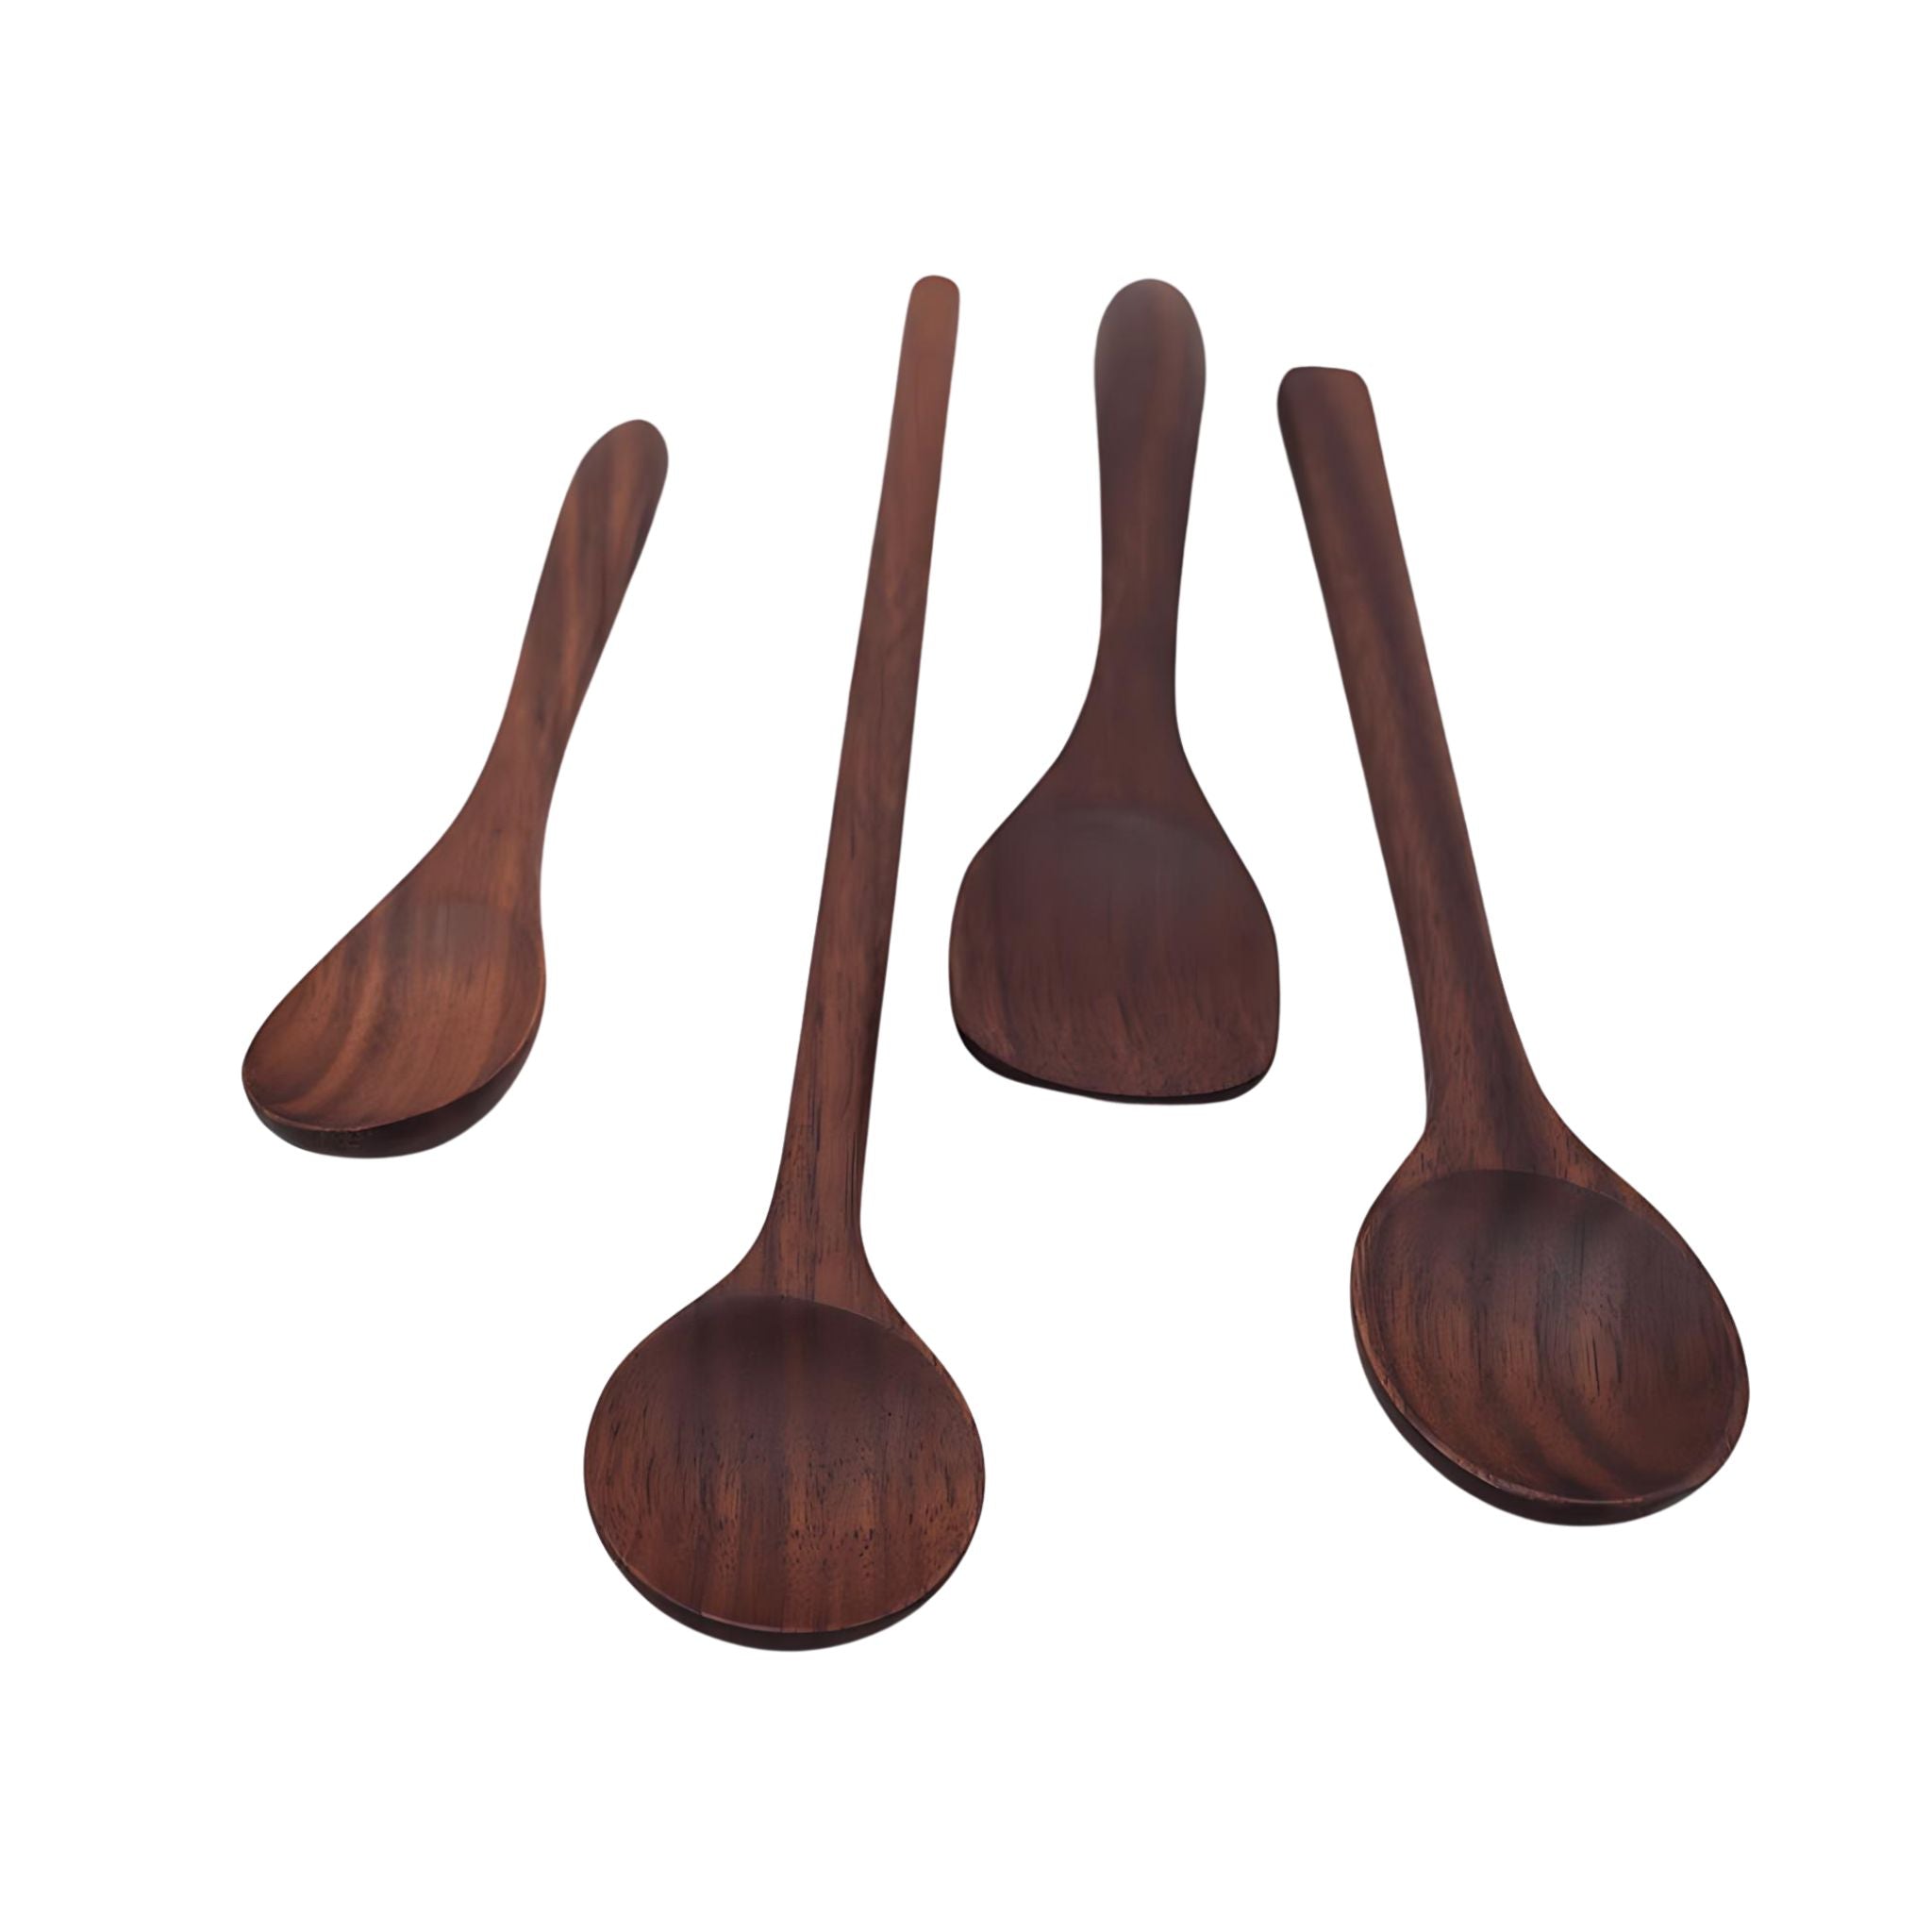 Walnut Flathead Spoon - 6’’